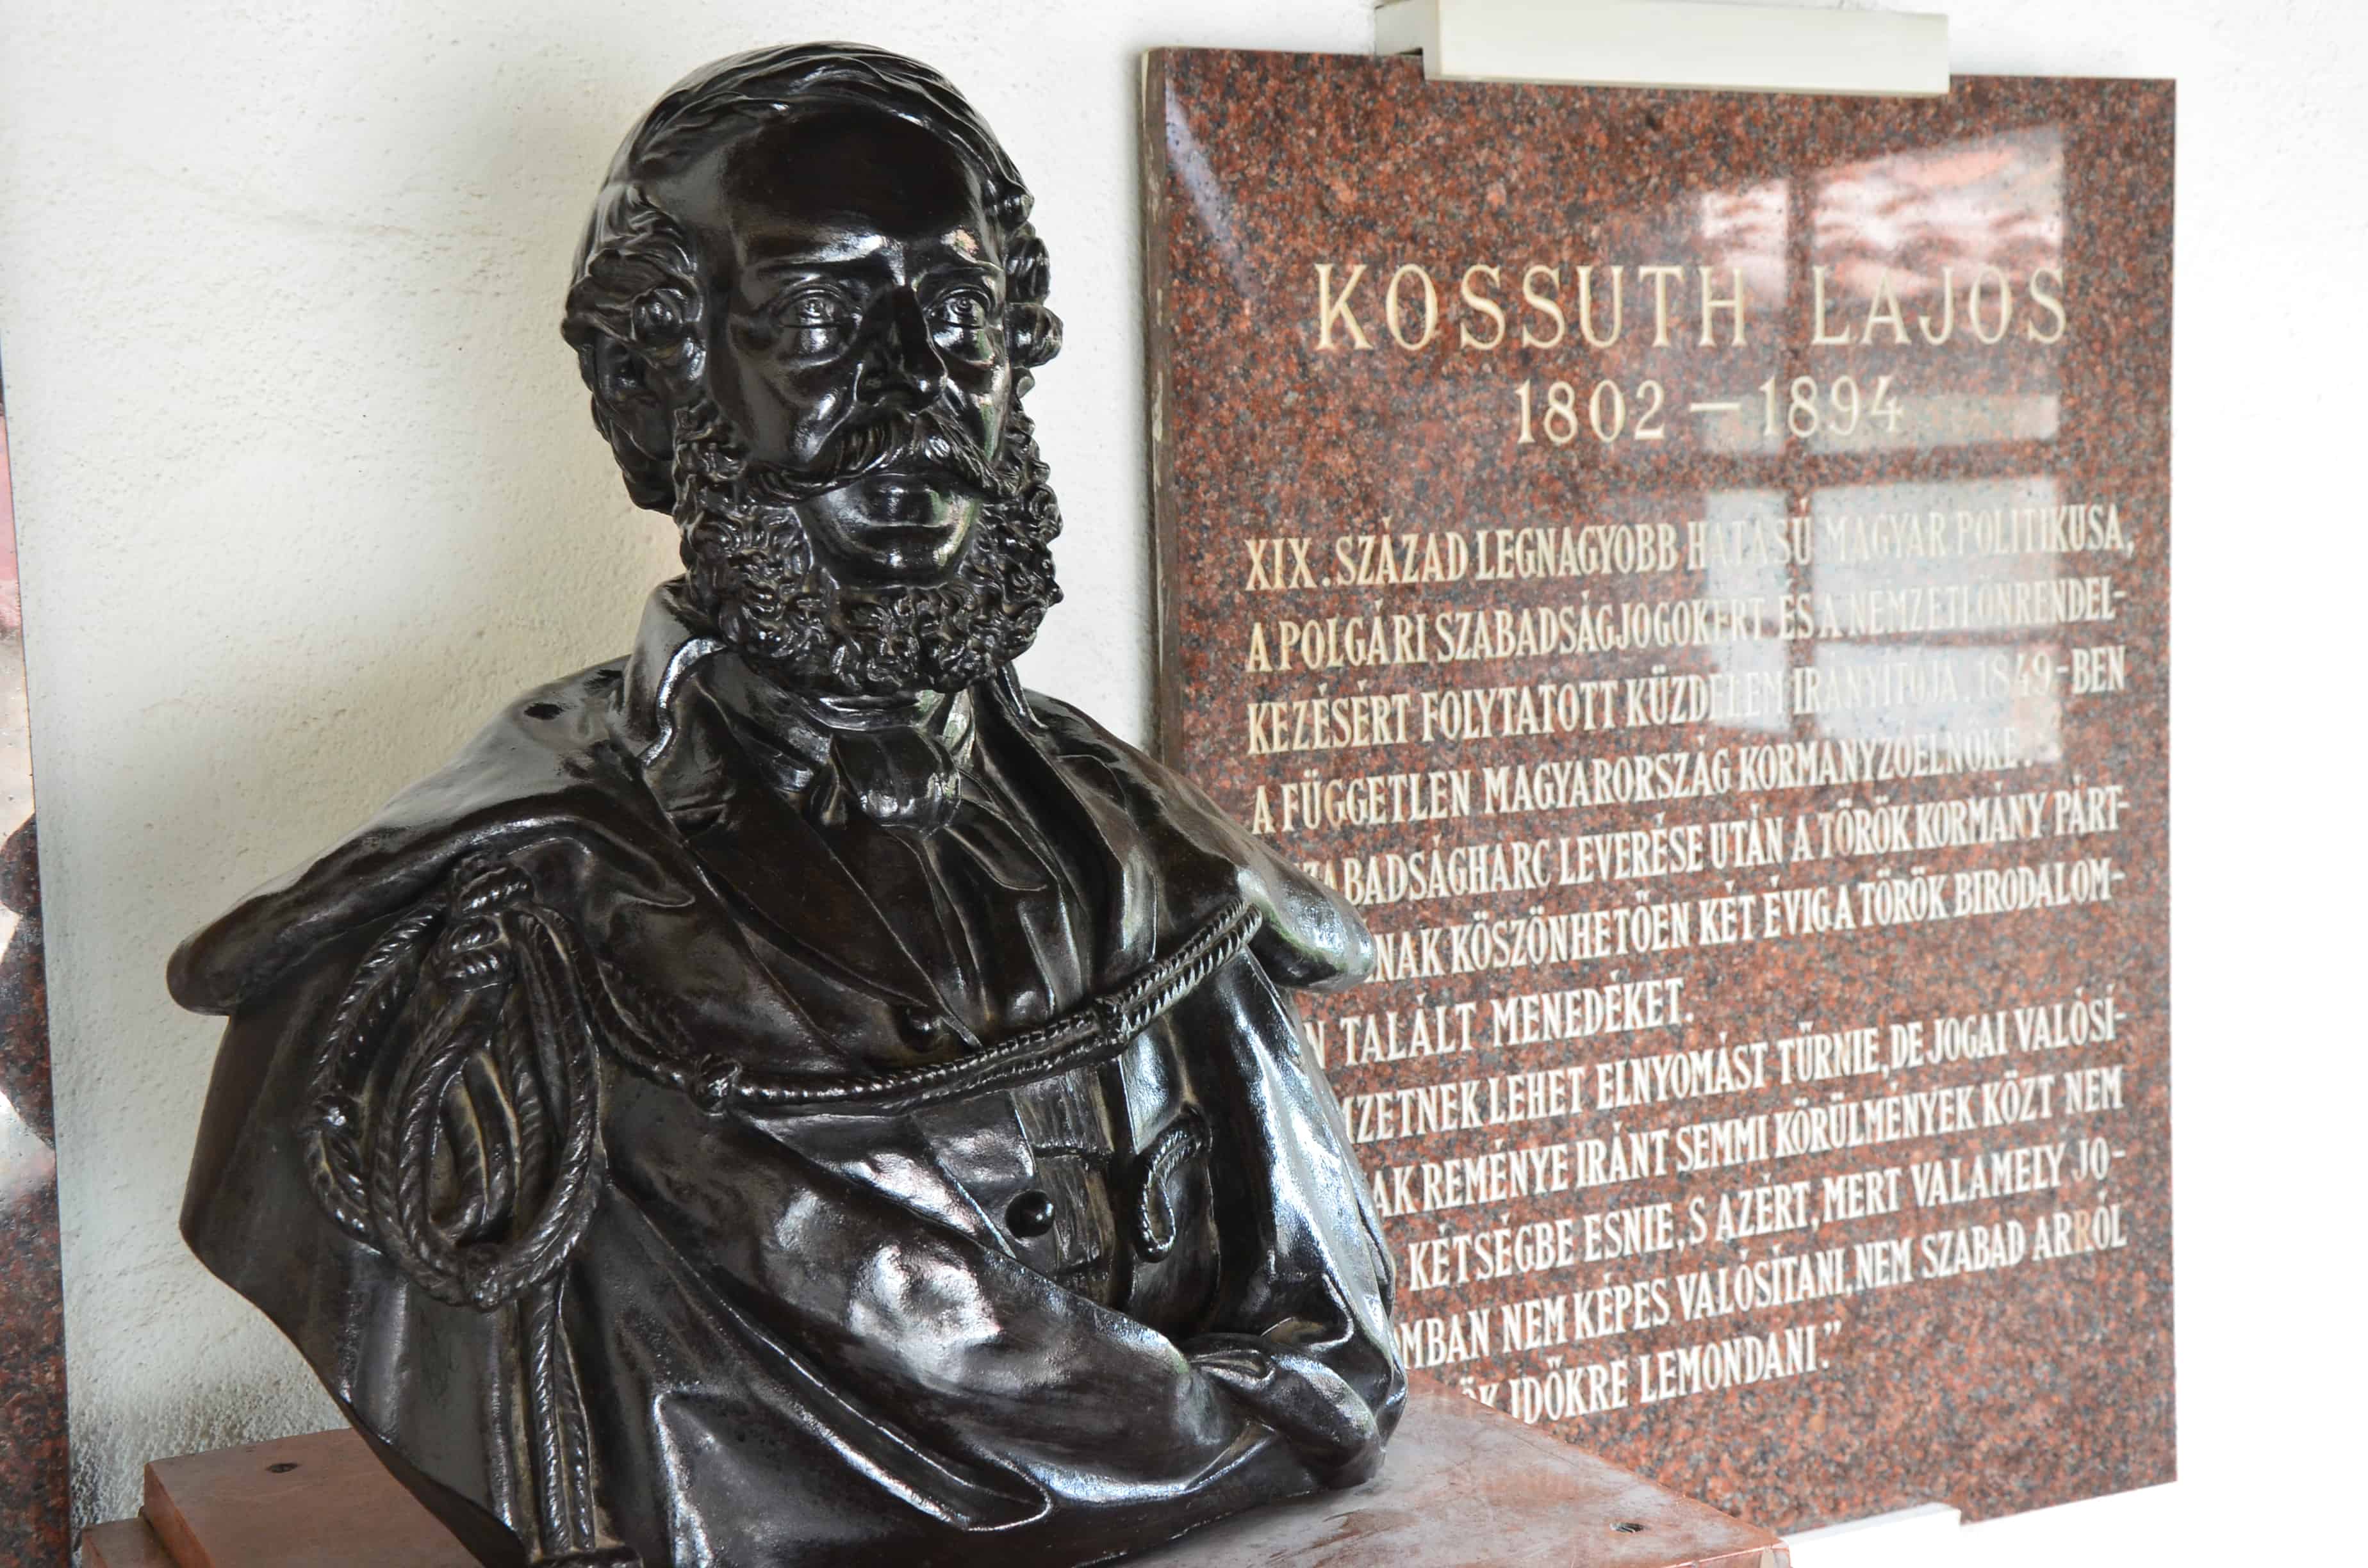 Bust of Lajos Kossuth at the Lajos Kossuth House in Kütahya, Turkey